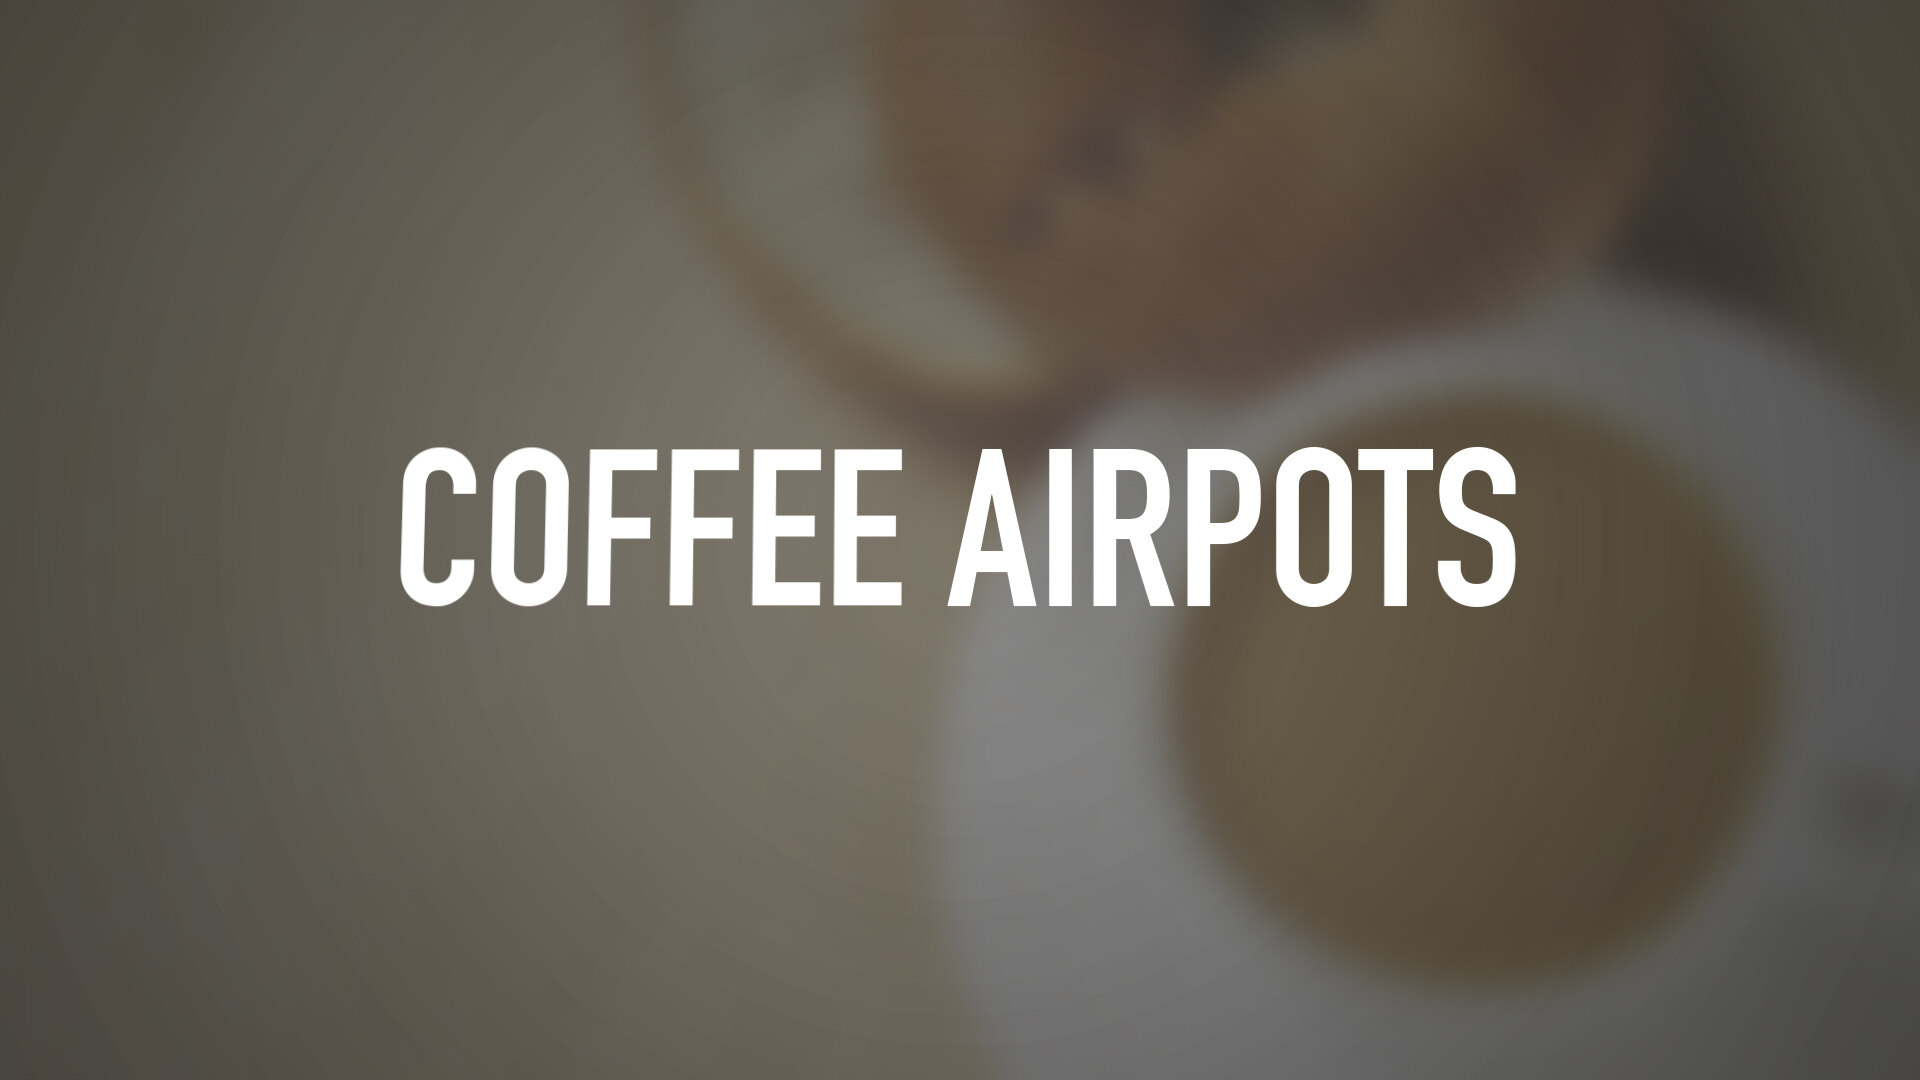 https://cdn.webstaurantstore.com/images/videos/extra_large/coffee_airpots.jpg